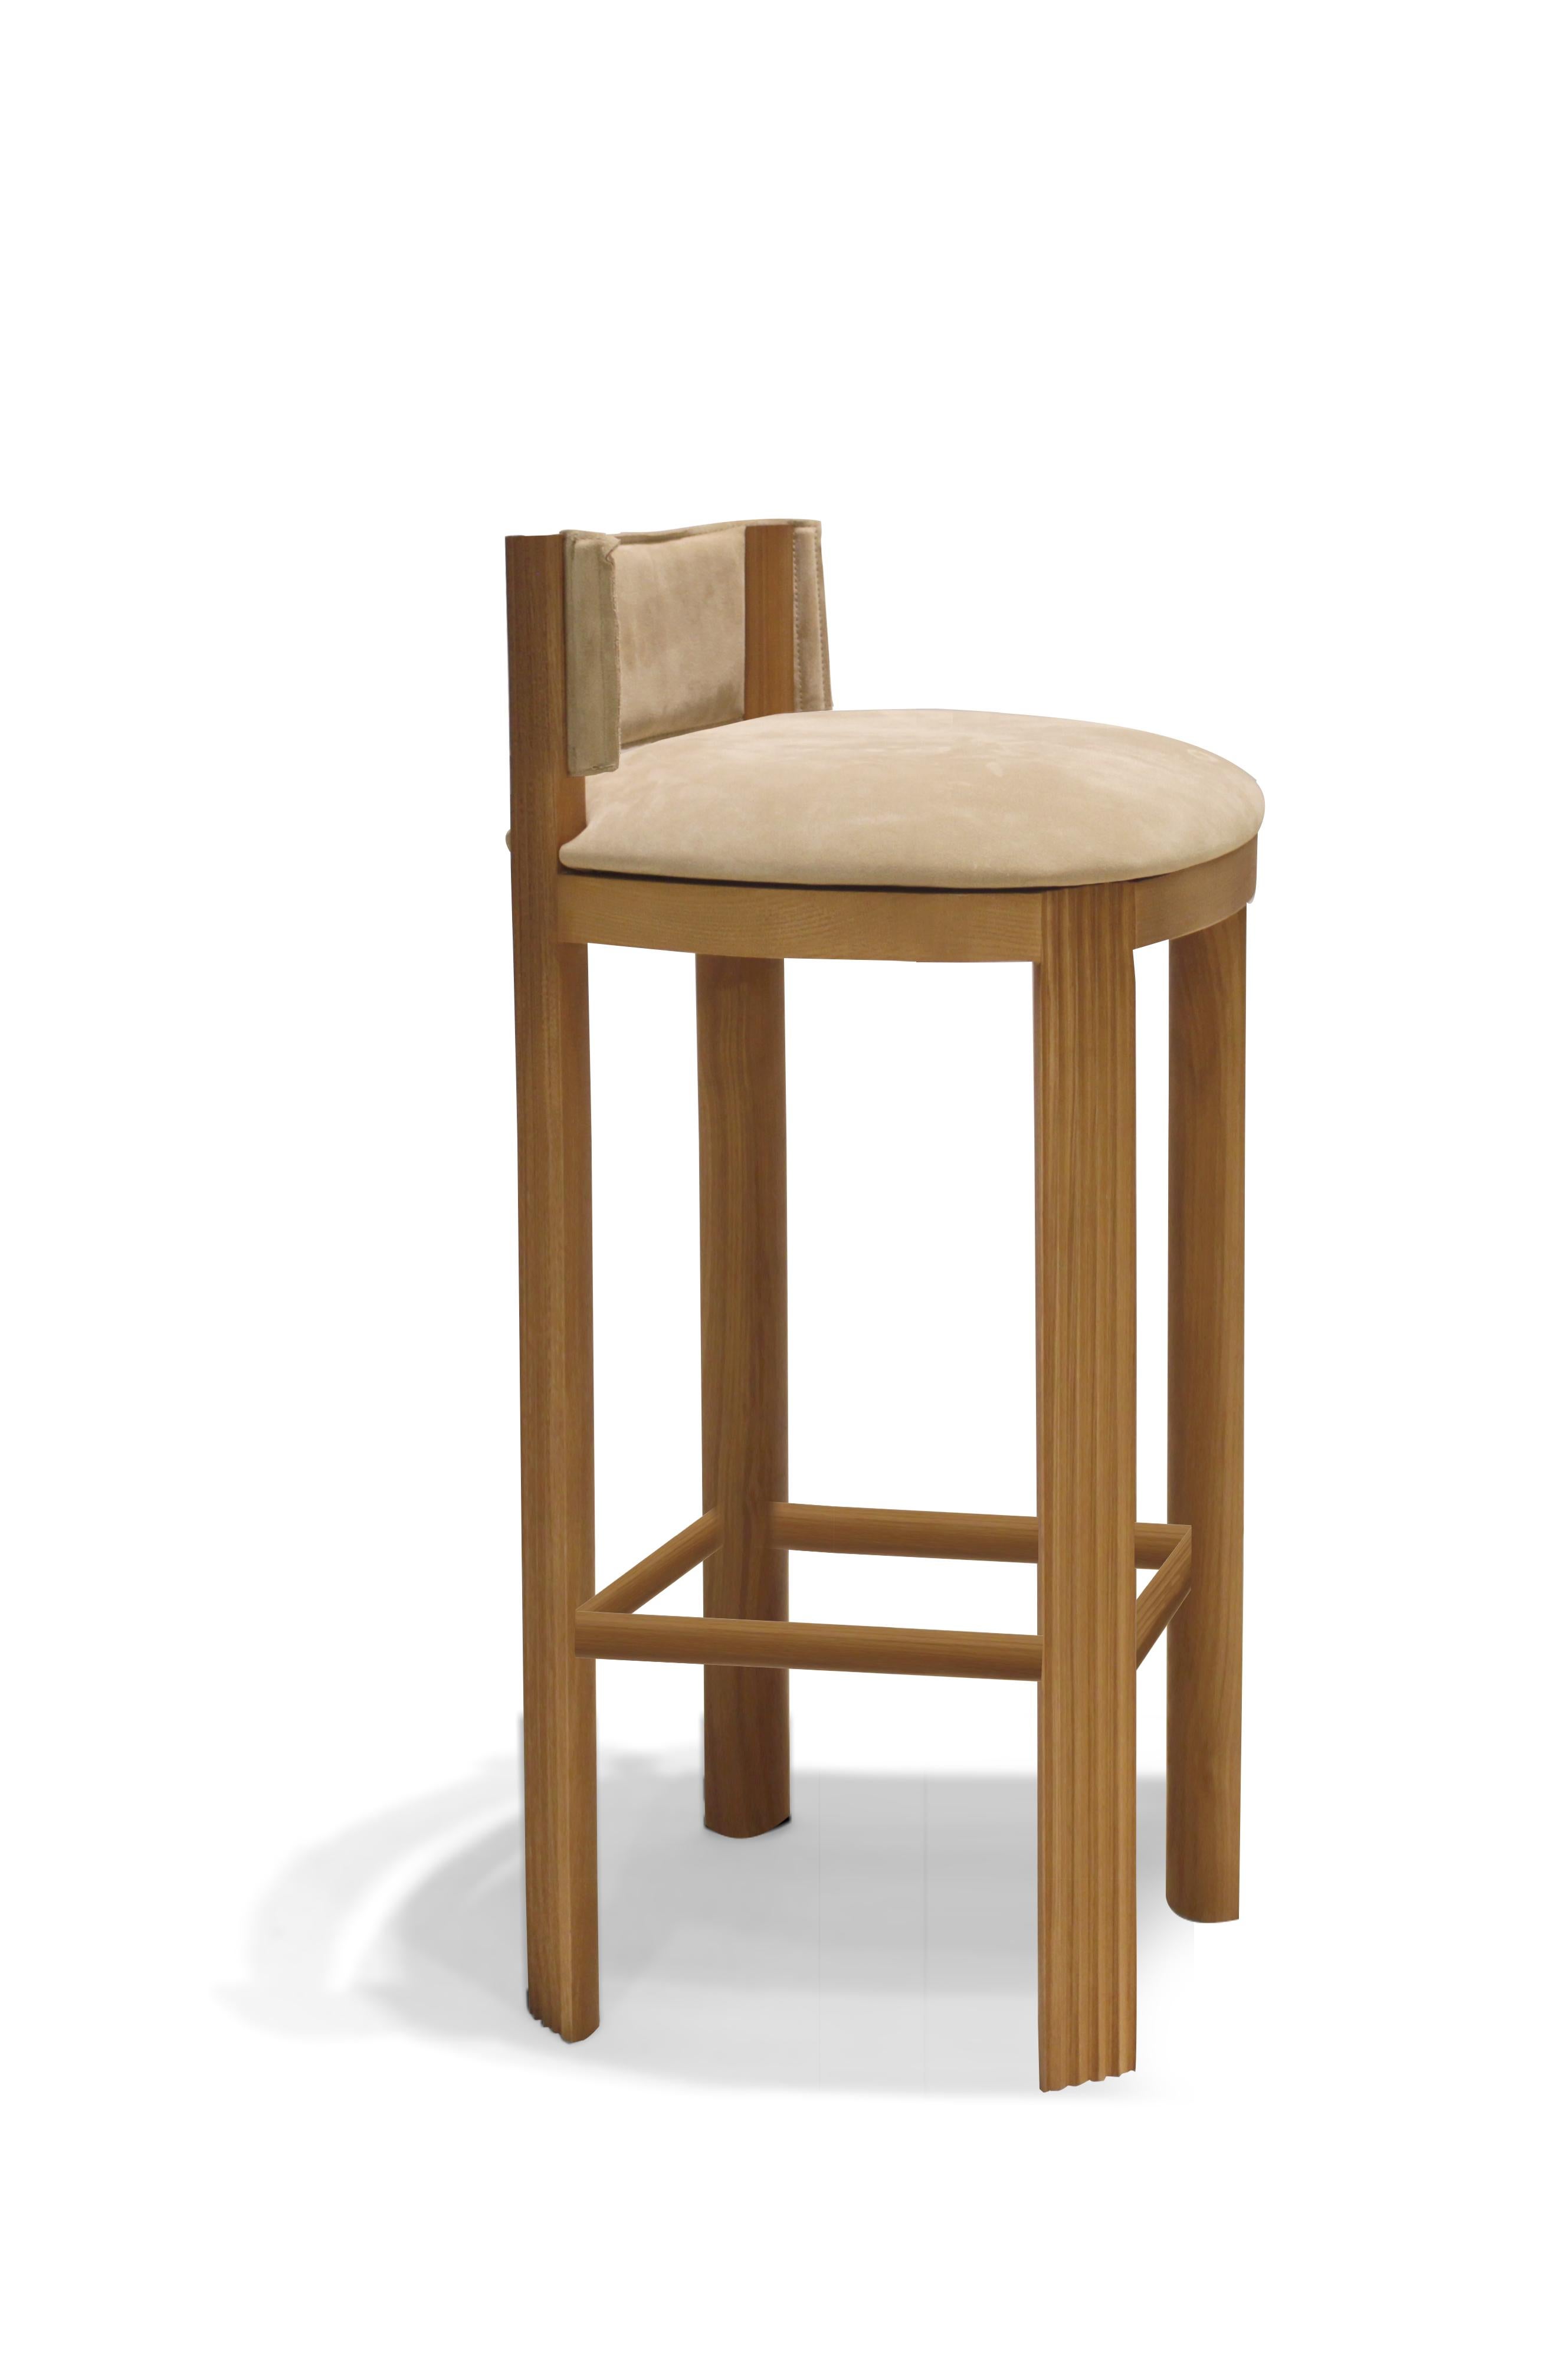 Portuguese Unique Oak Bar Chair by Collector For Sale